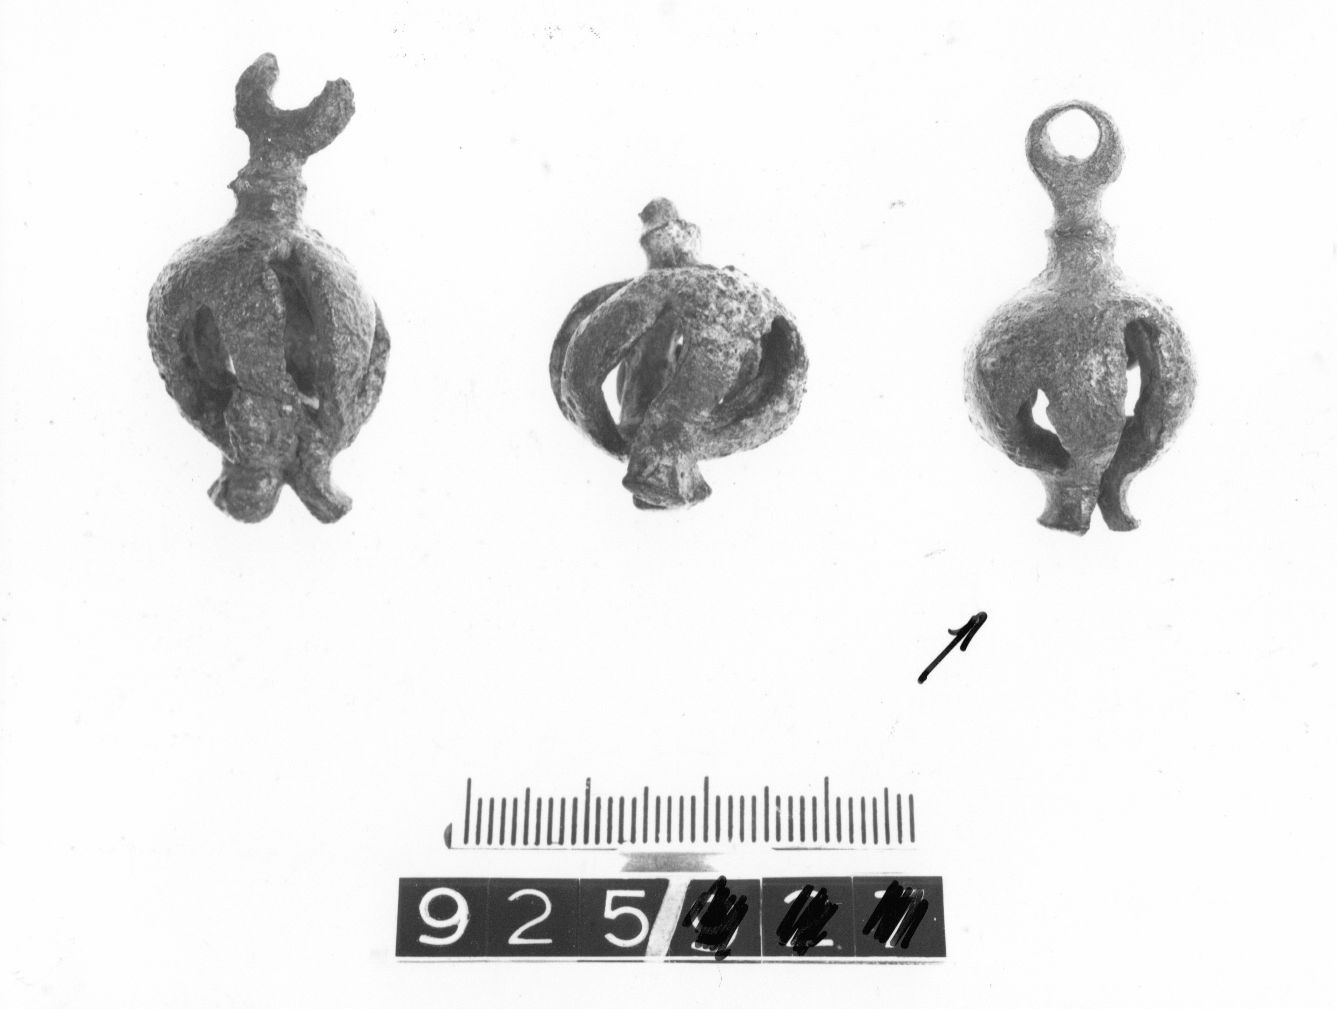 pendaglio, a melograno - cultura ligure (fine/ primo quarto VIII-VII a.C)